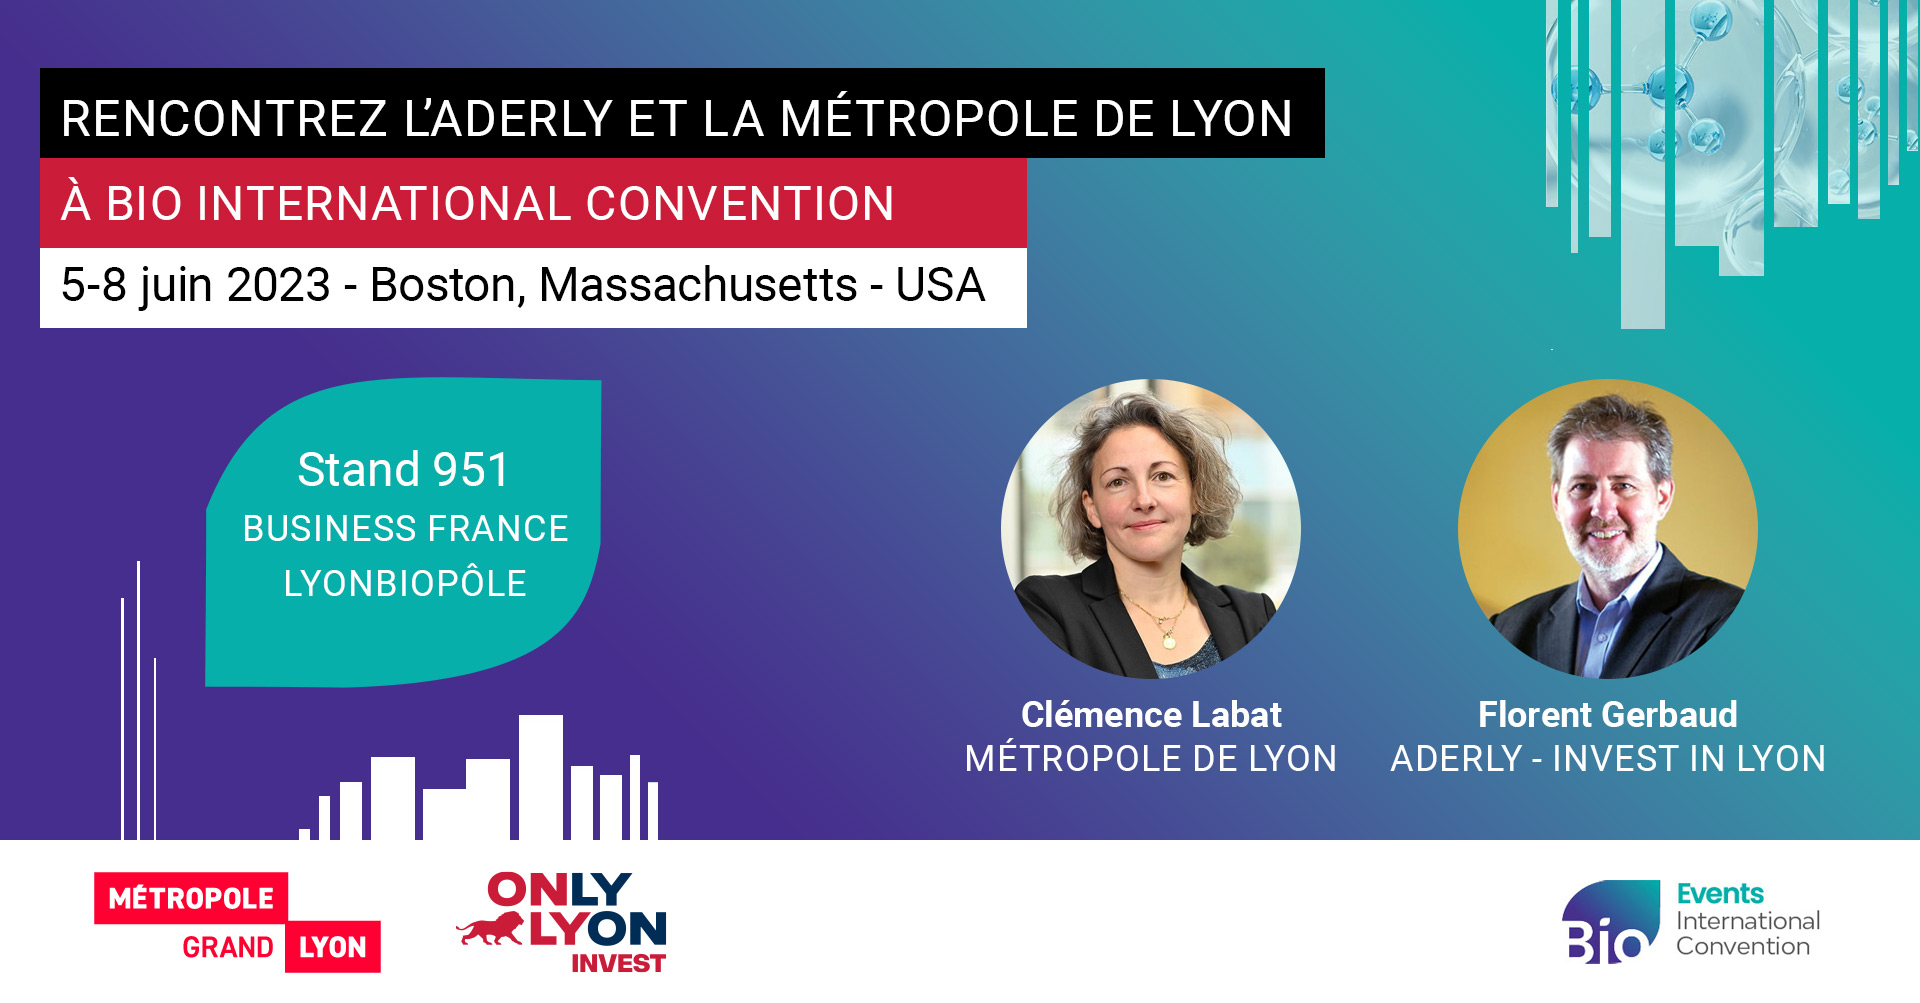 Rencontrez l'Aderly et la Métropole de Lyon à BIO 2023, conférence internationale biotechnologies, industrie pharmaceutique, sciences de la vie, du 5 au 8 juin 2023 à San Diego - États-Unis (version française)